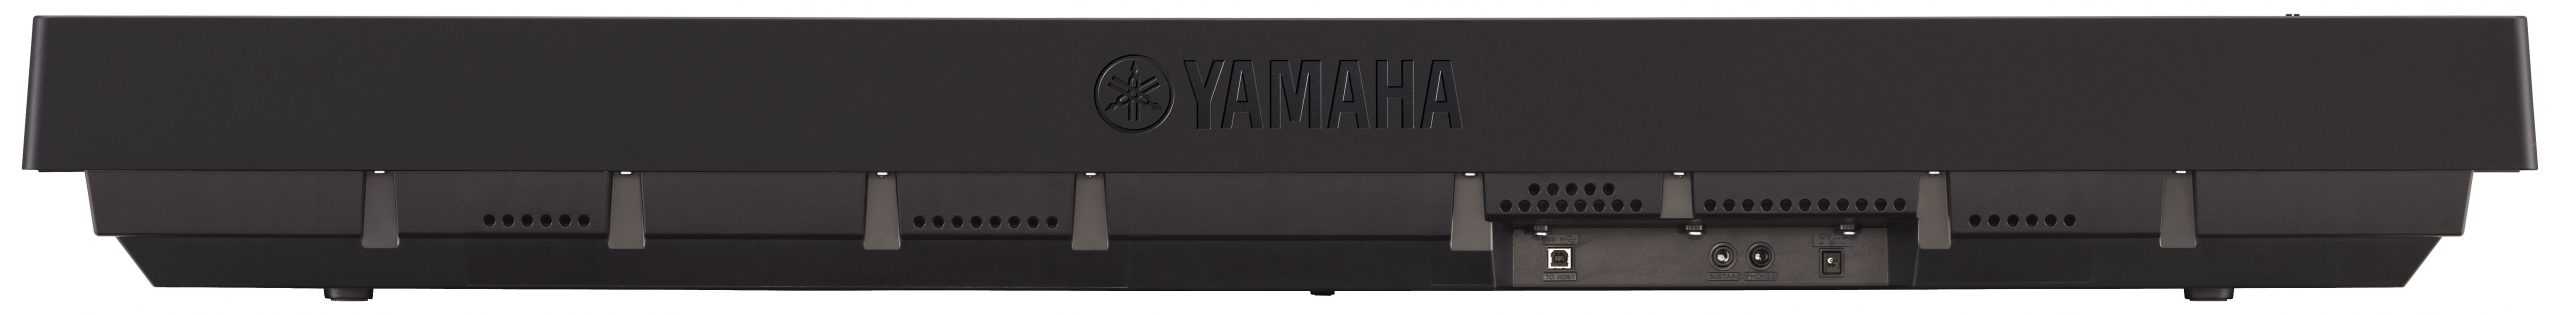 yamaha p45 digital piano review